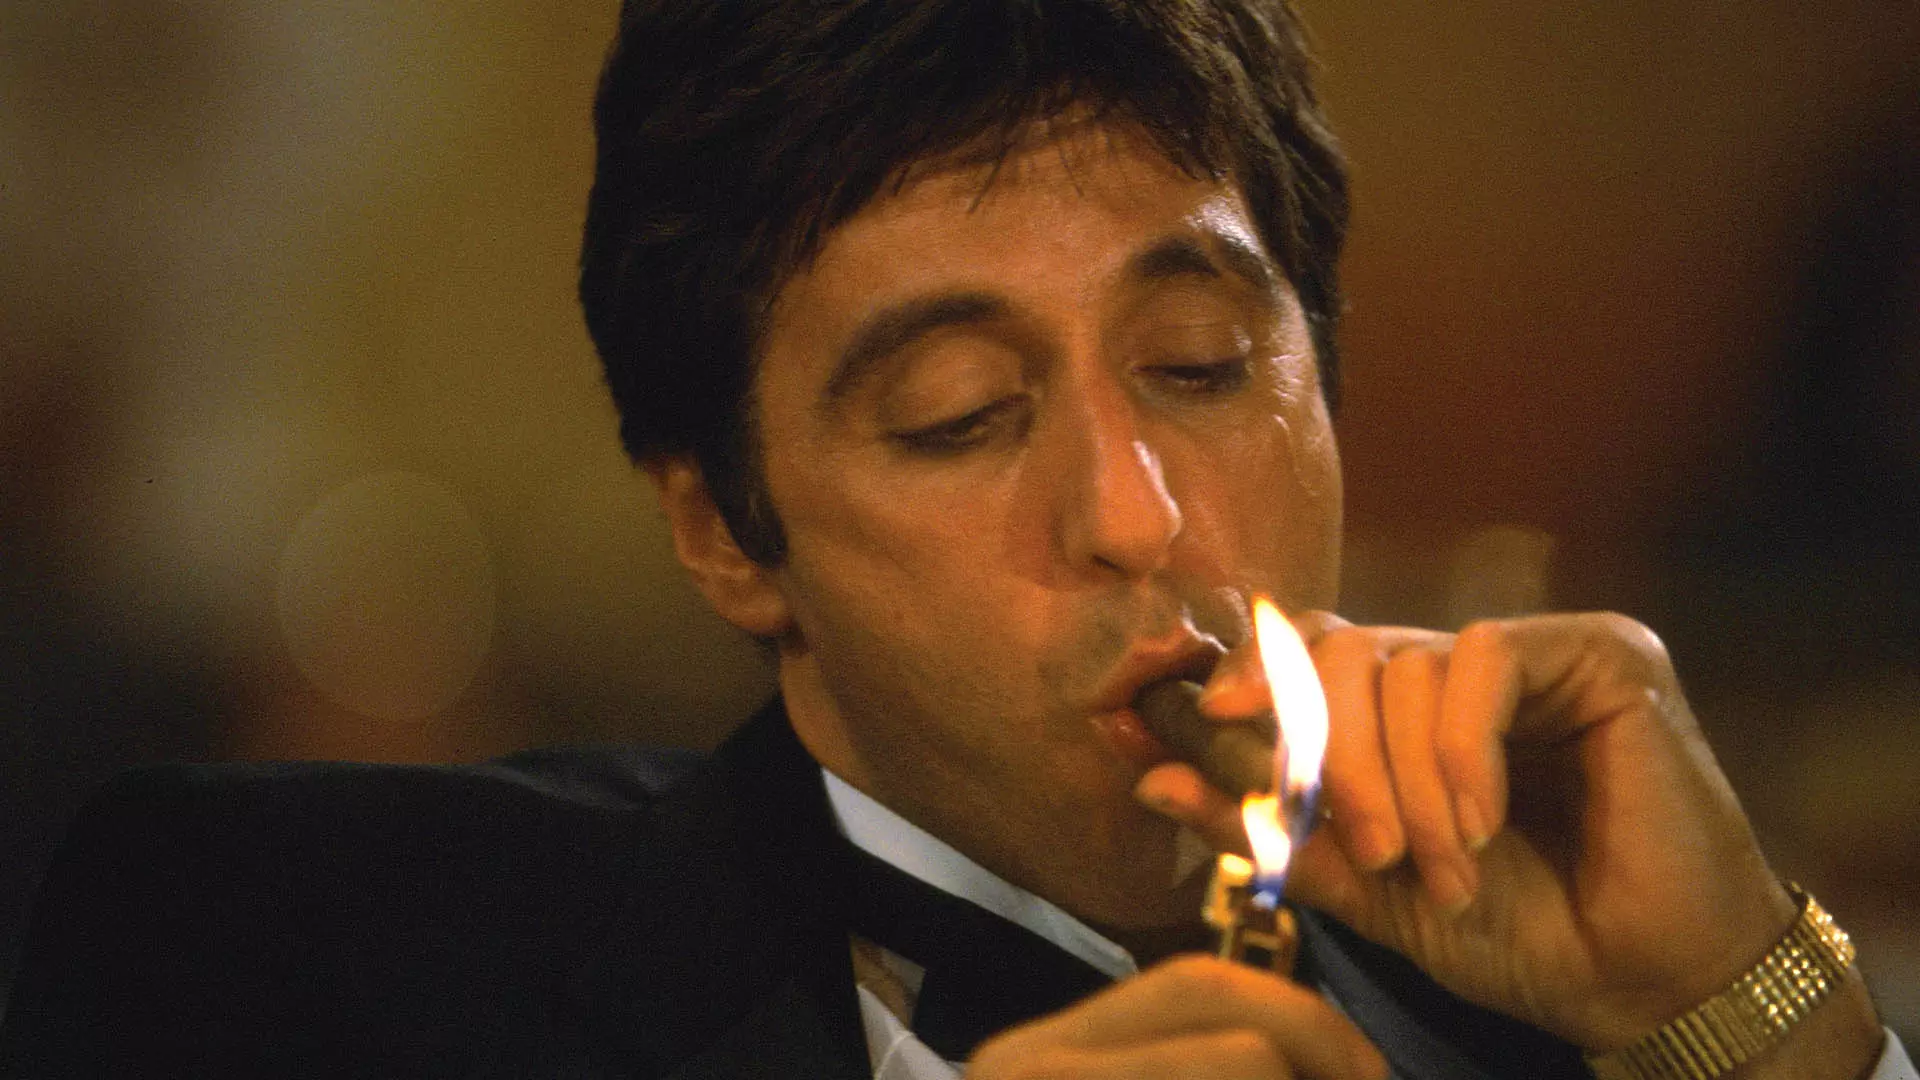 شخصیت تونی مونتانا درحال روشن کردن سیگار خود در فیلم scarface 